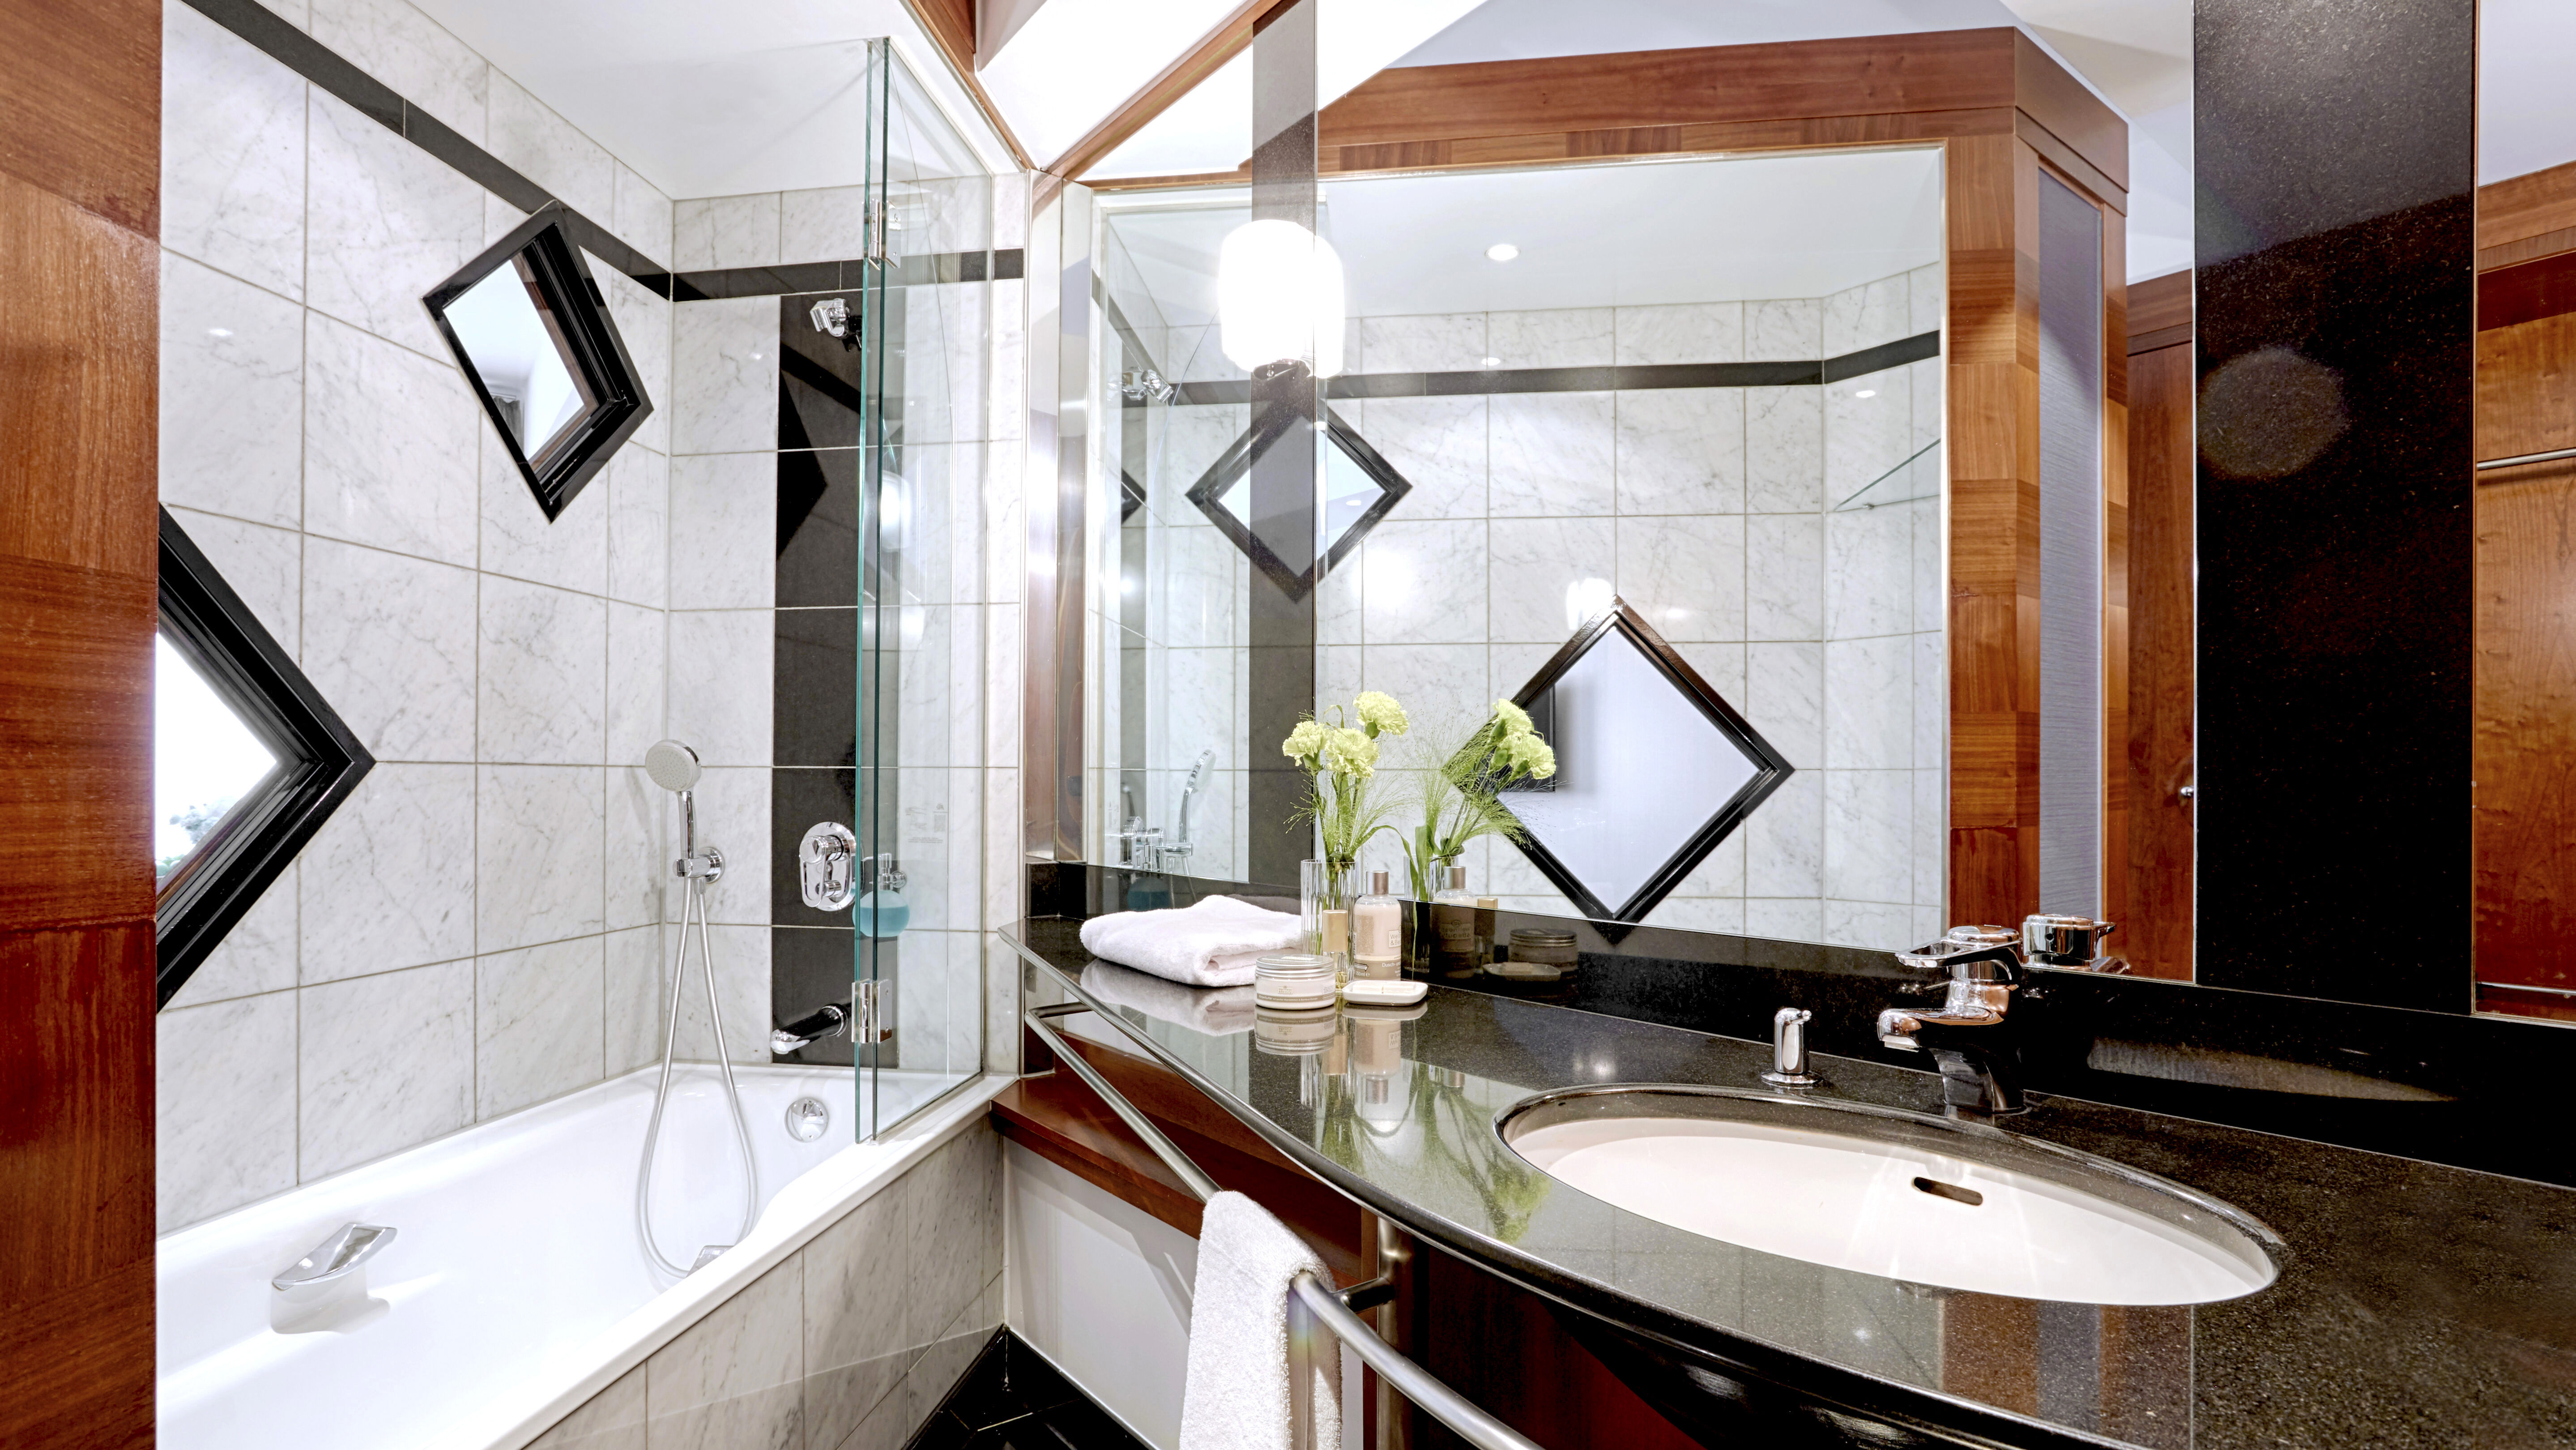 Badezmmer mitWaschbecken, großem Spiegel und Badewanne mit Dusche.